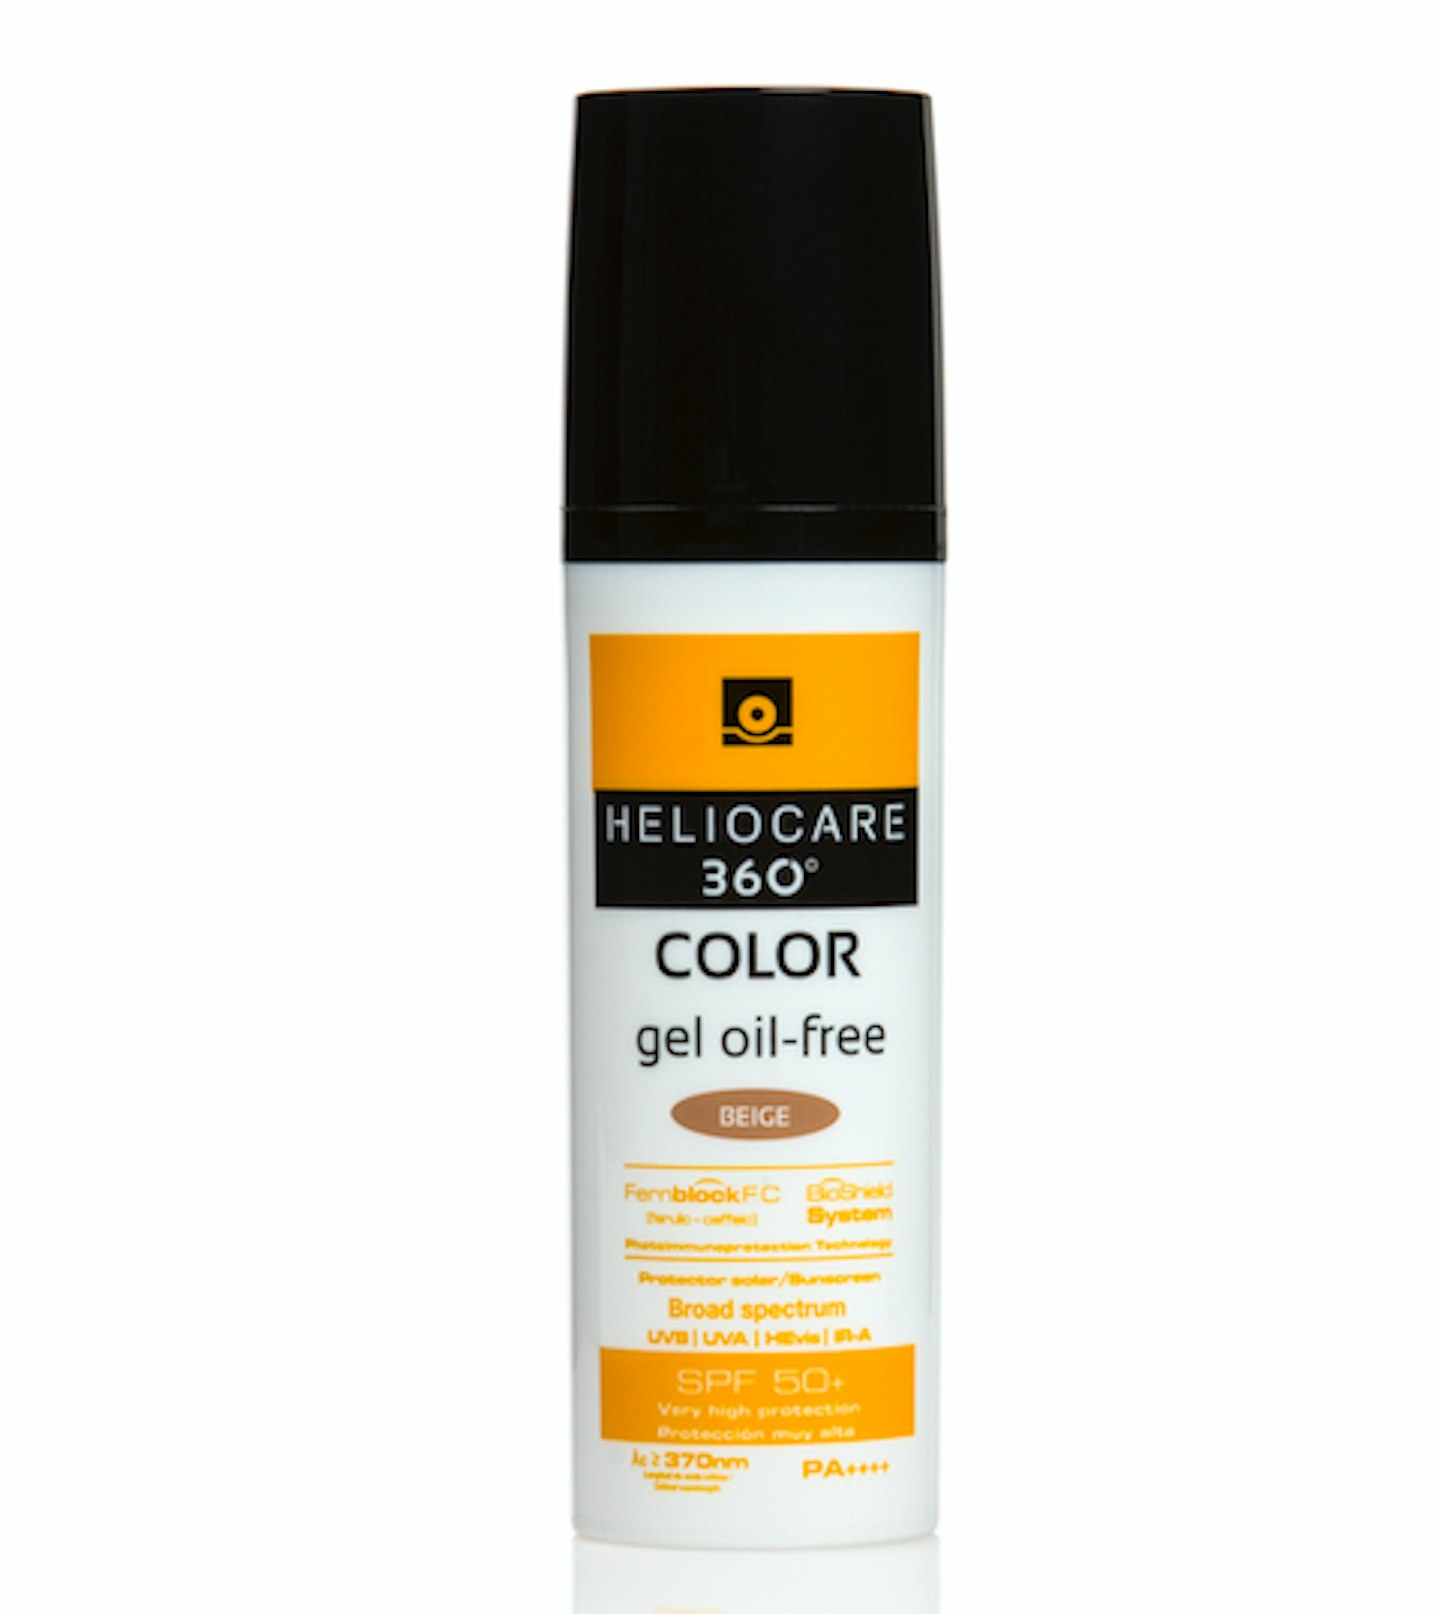 Heliocare Gel Cream SPF 50 in colour Beige